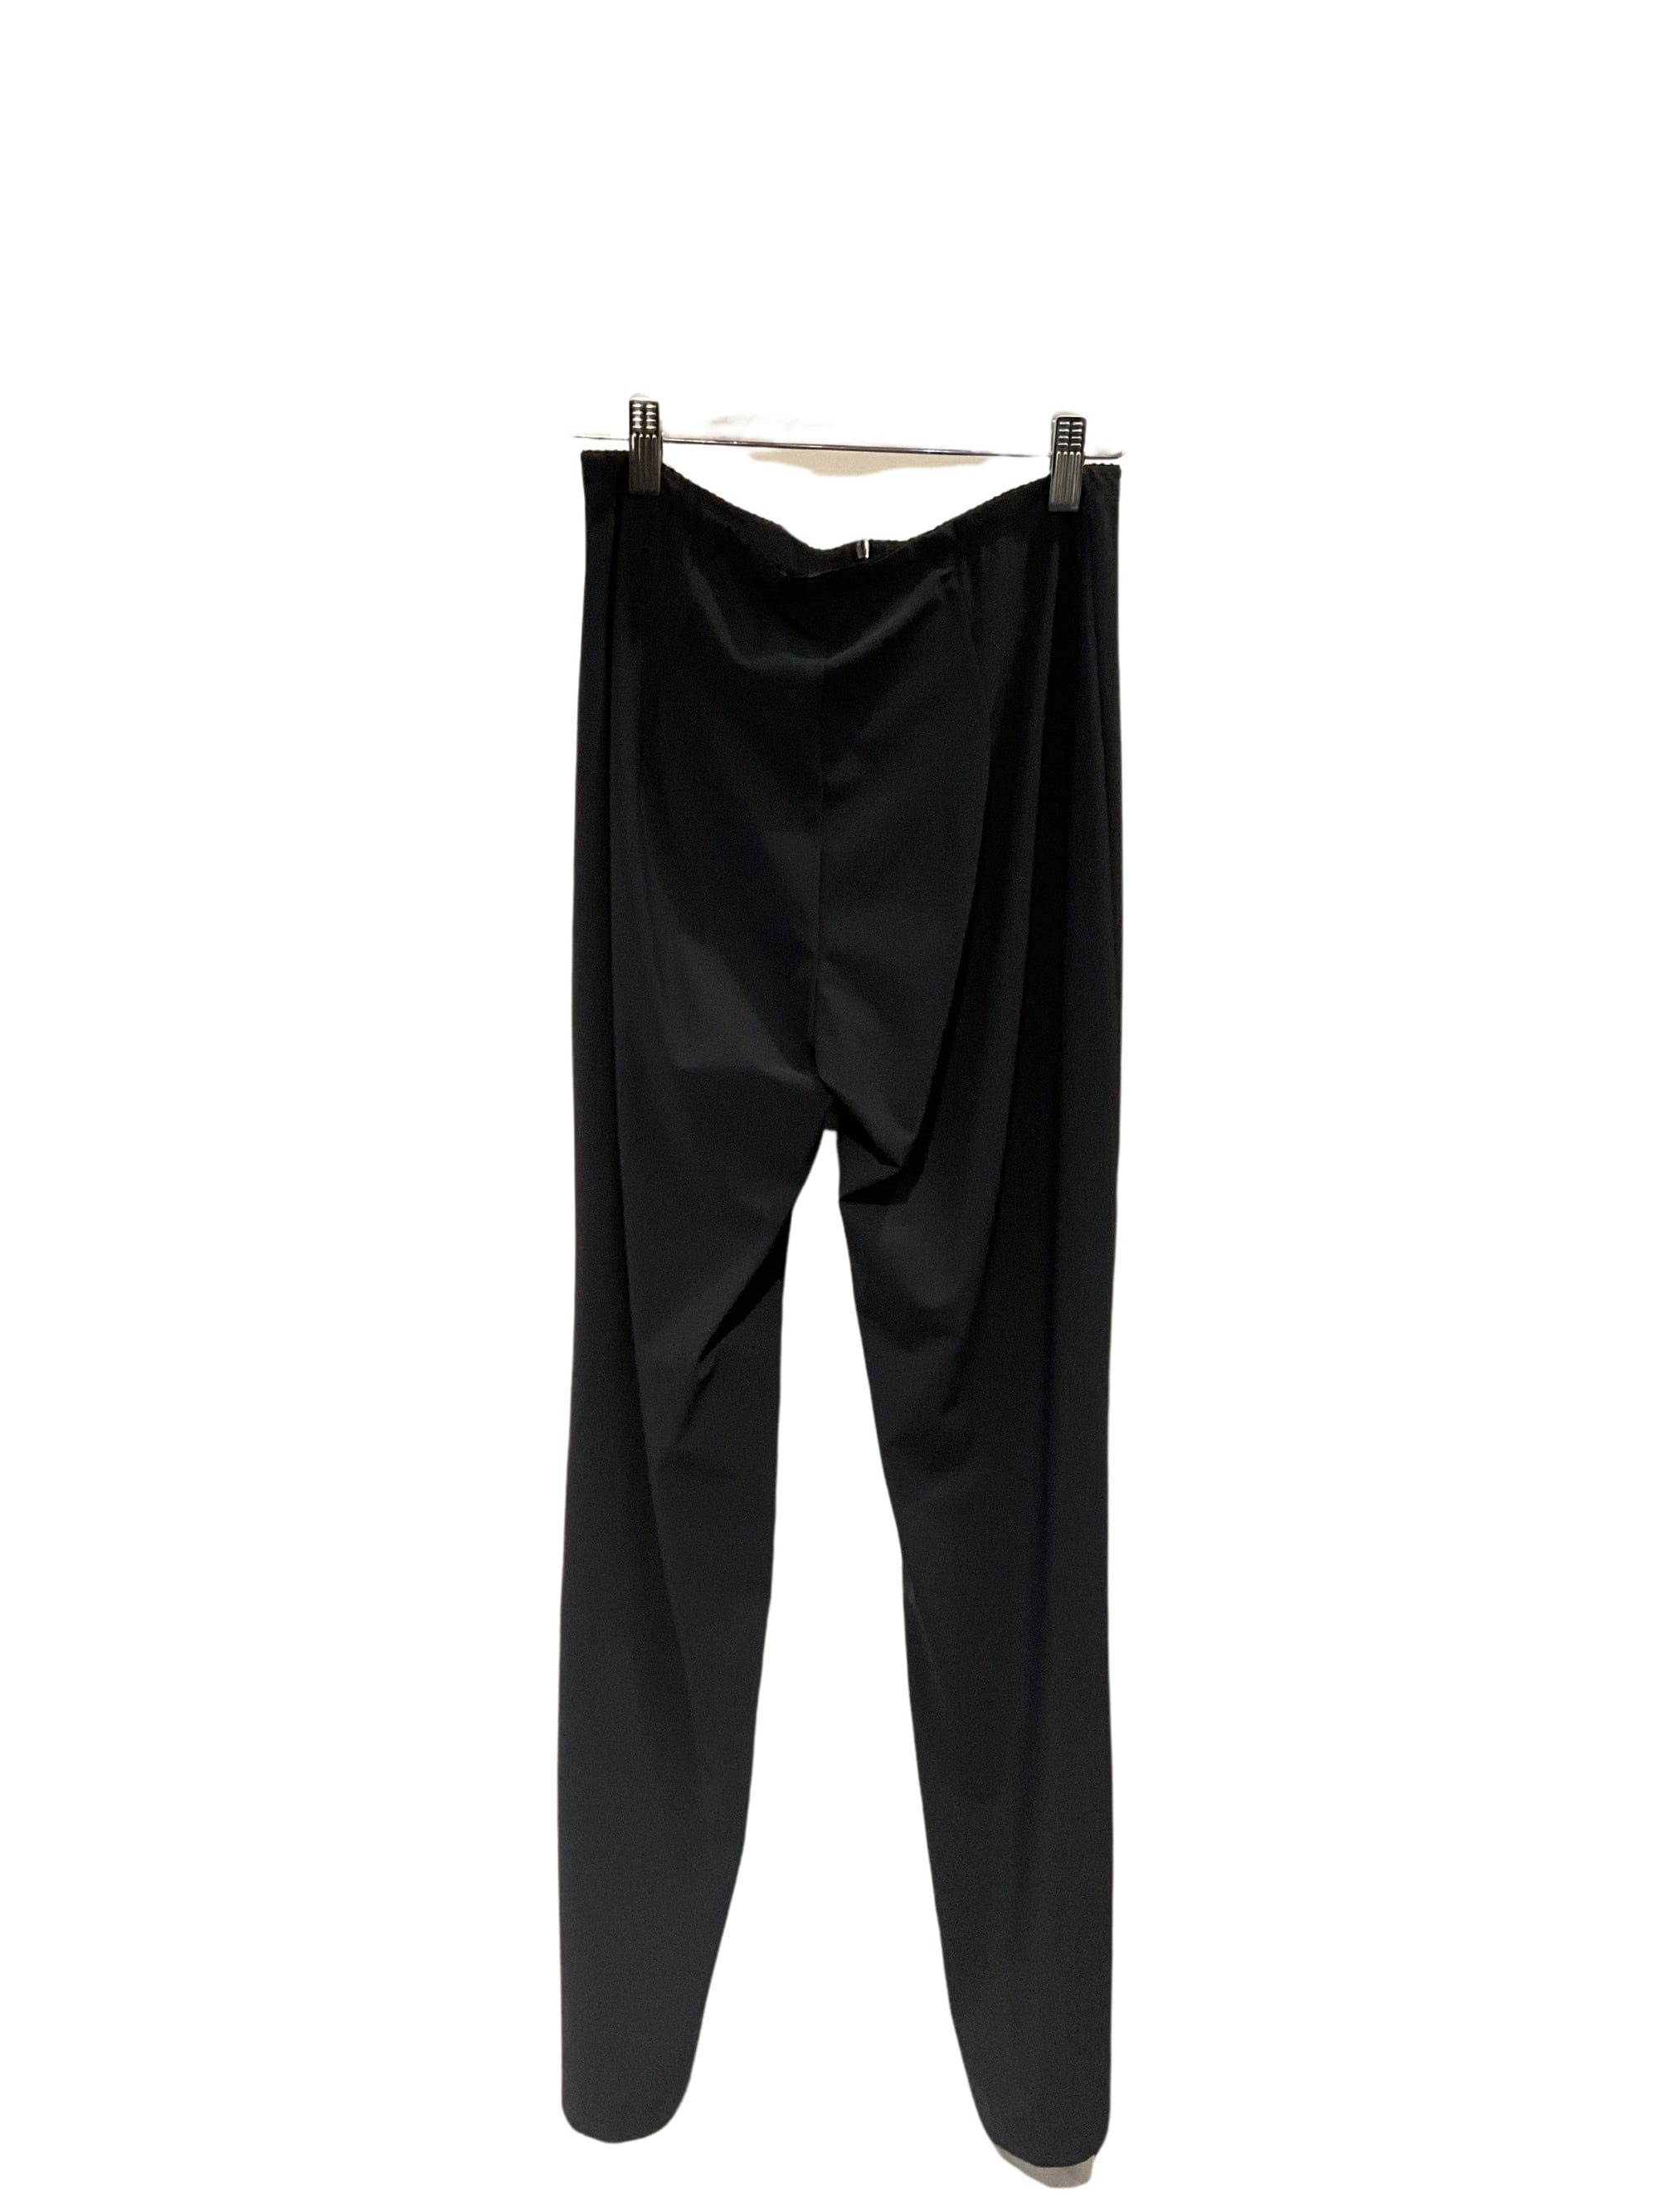 Porto Dark gray pants - clever alice